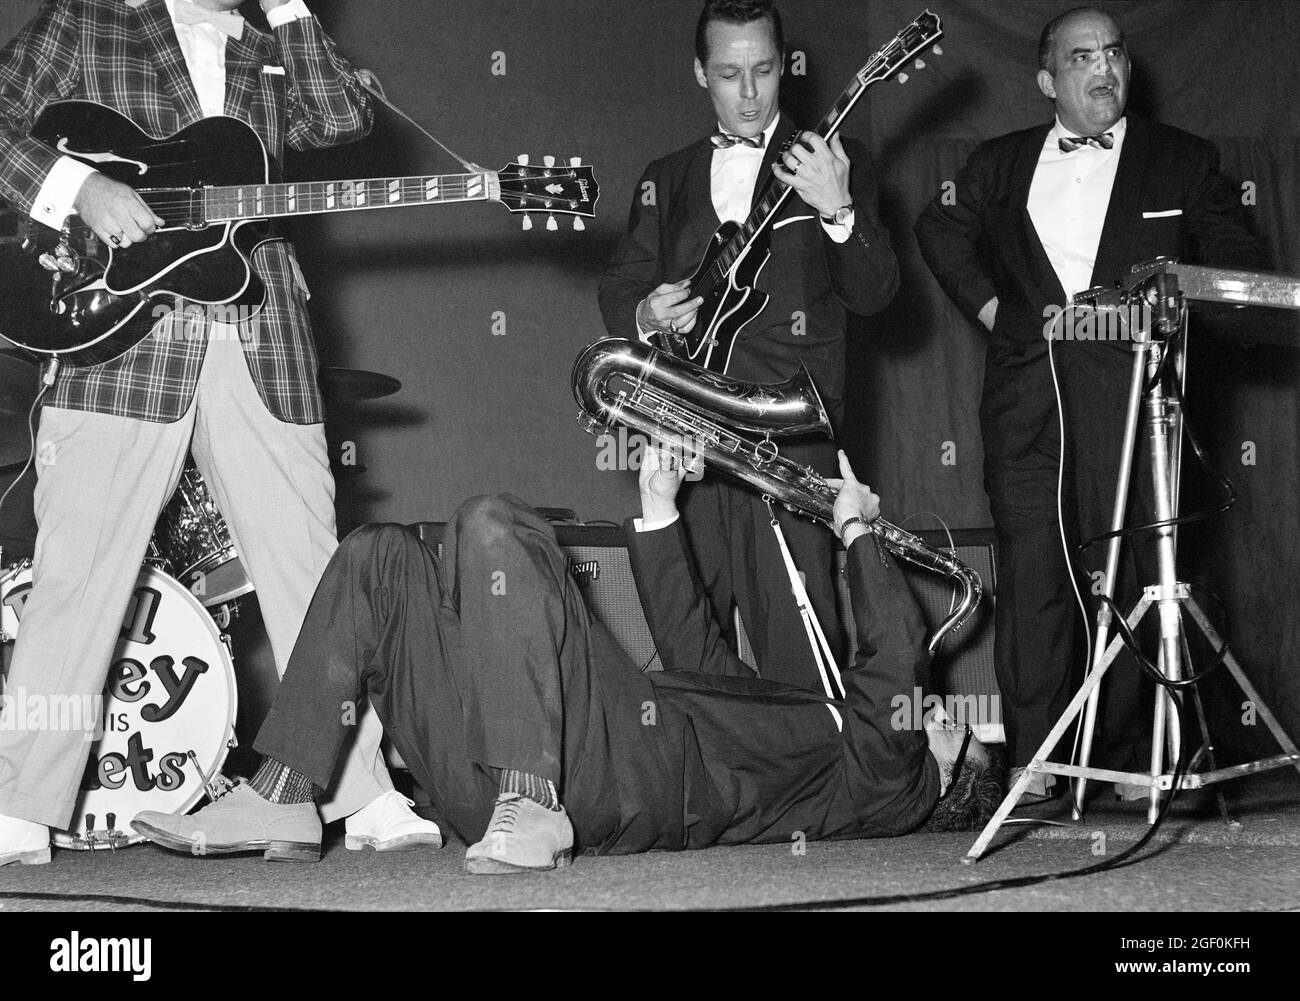 Novembre 1958, Bill Haley et ses comètes se déroulant sur scène, Rudy Pompilli couché en jouant du saxophone, Strasbourg, Alsace, France, Europe, Banque D'Images